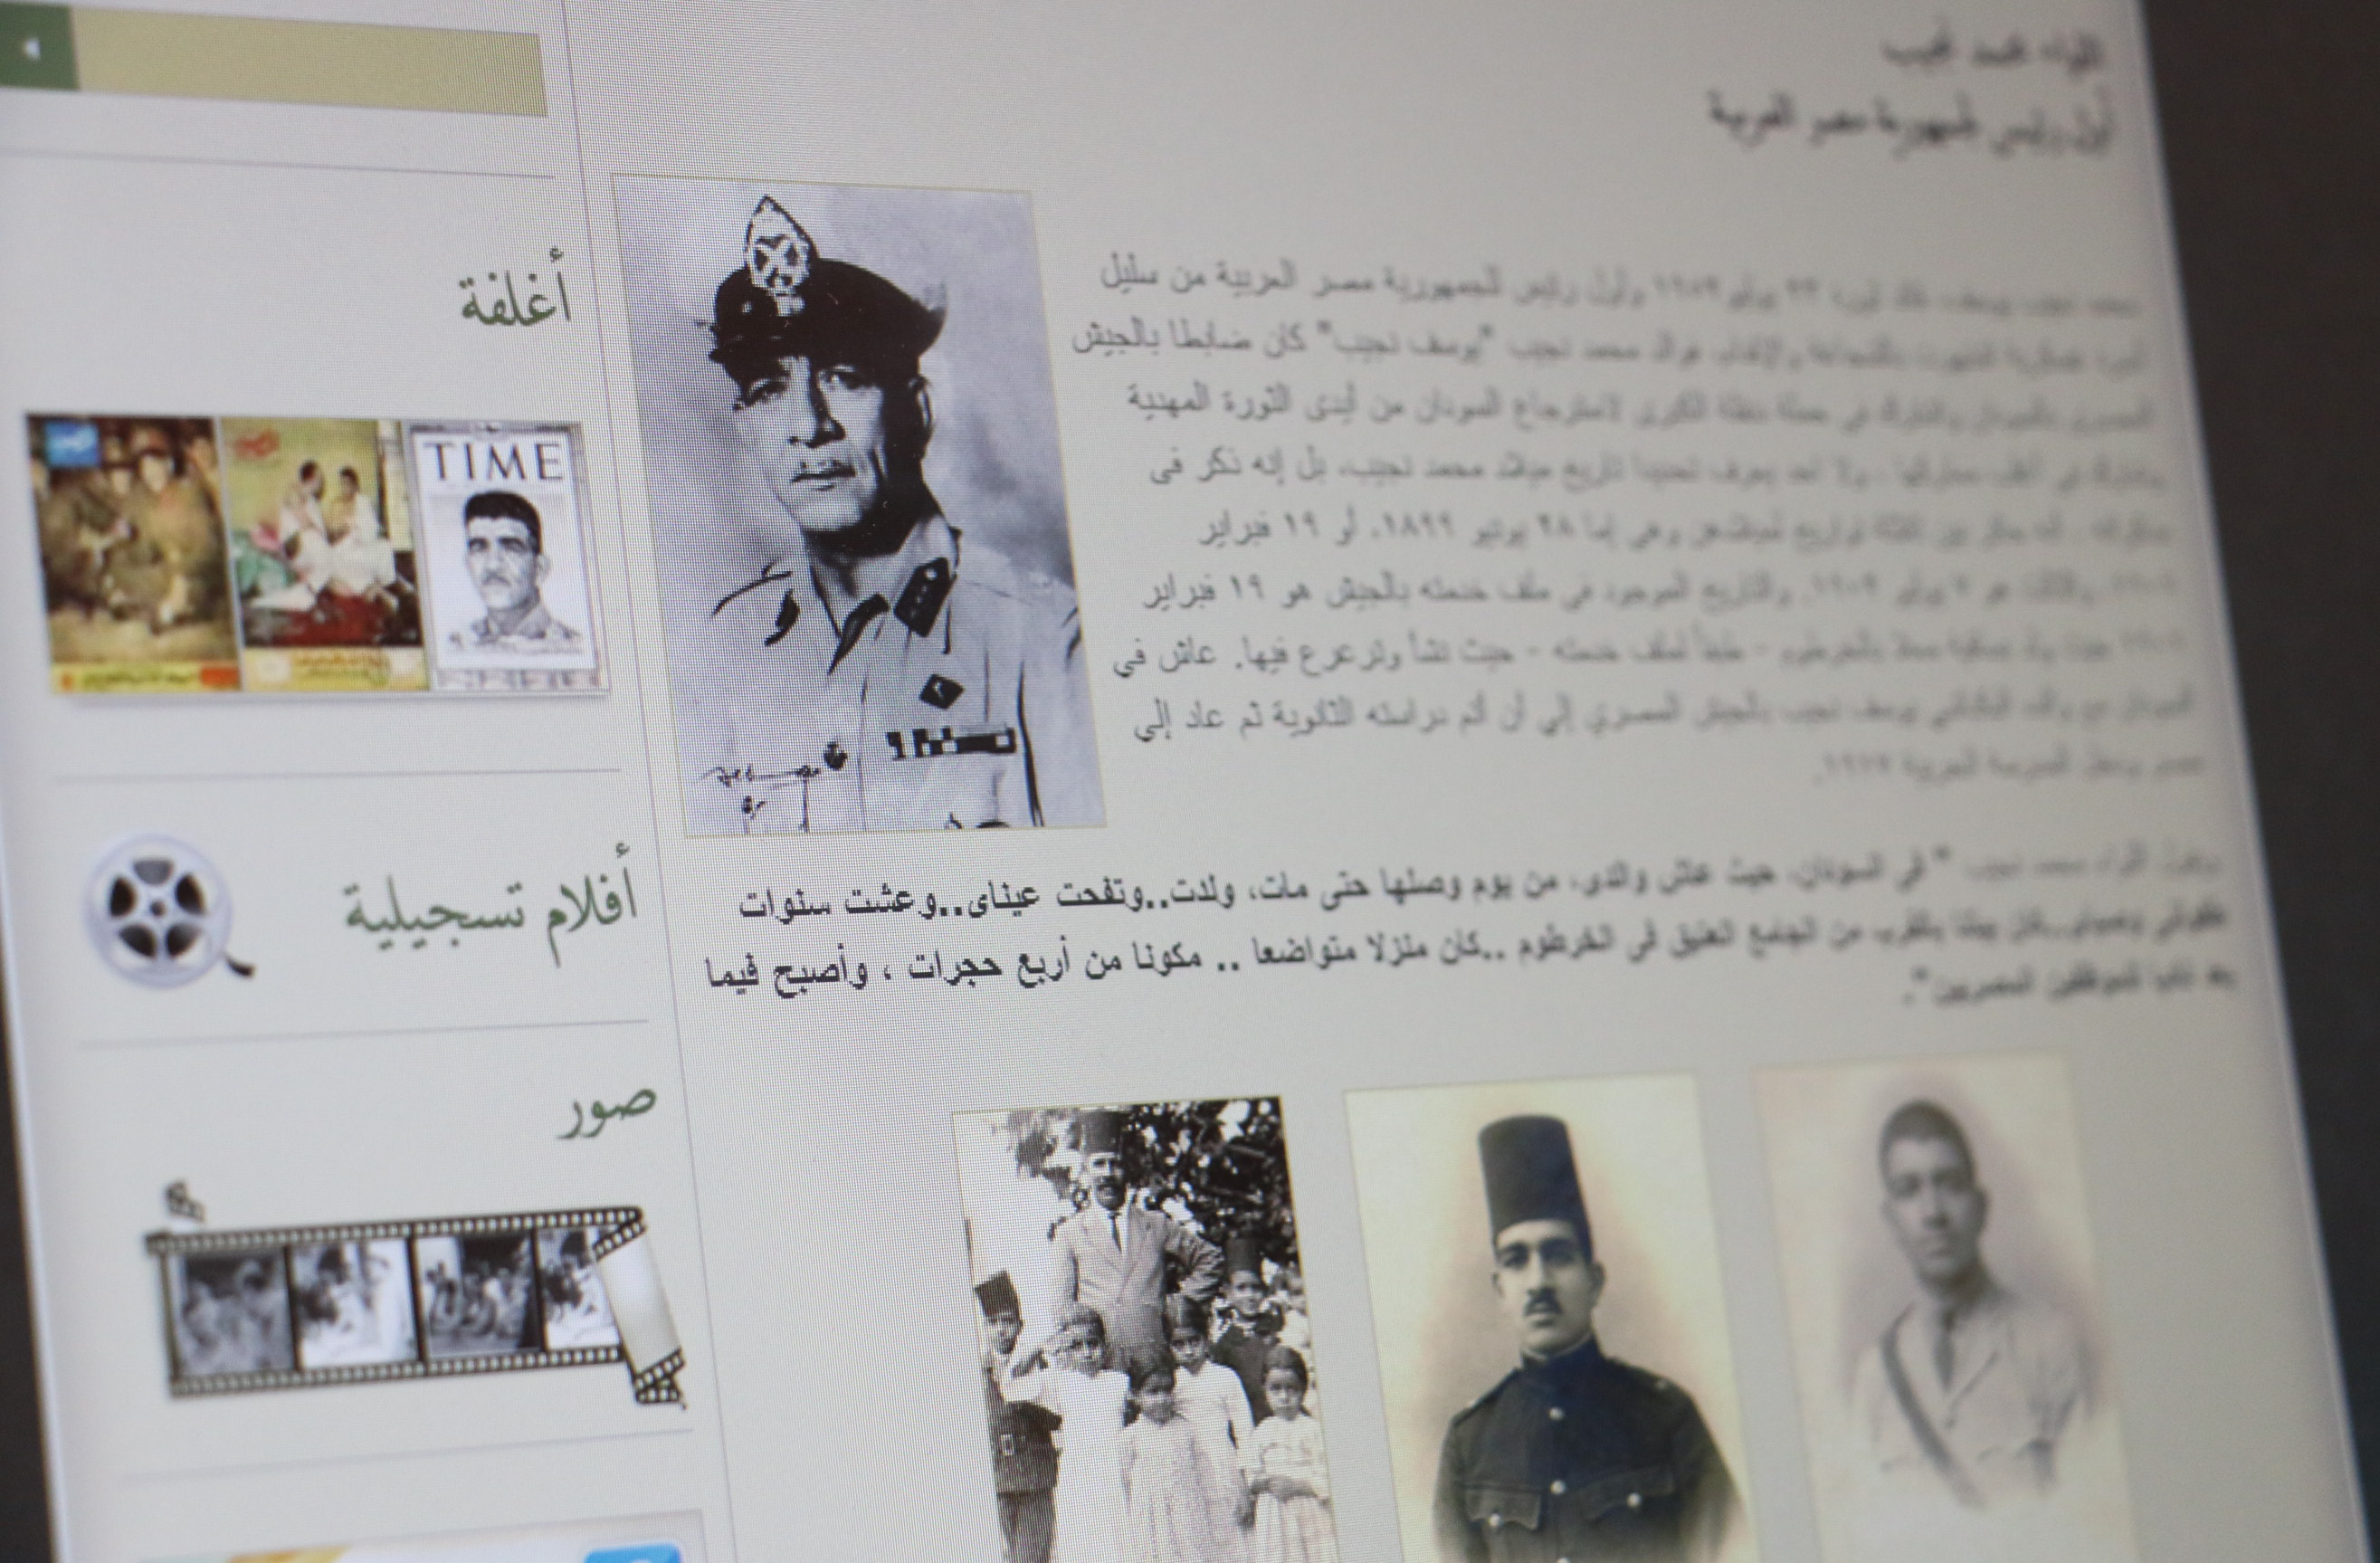 مكتبة رقمية بمكتبة الإسكندرية تؤرخ الرئيس الأول لمصر الراحل " محمد نجيب"